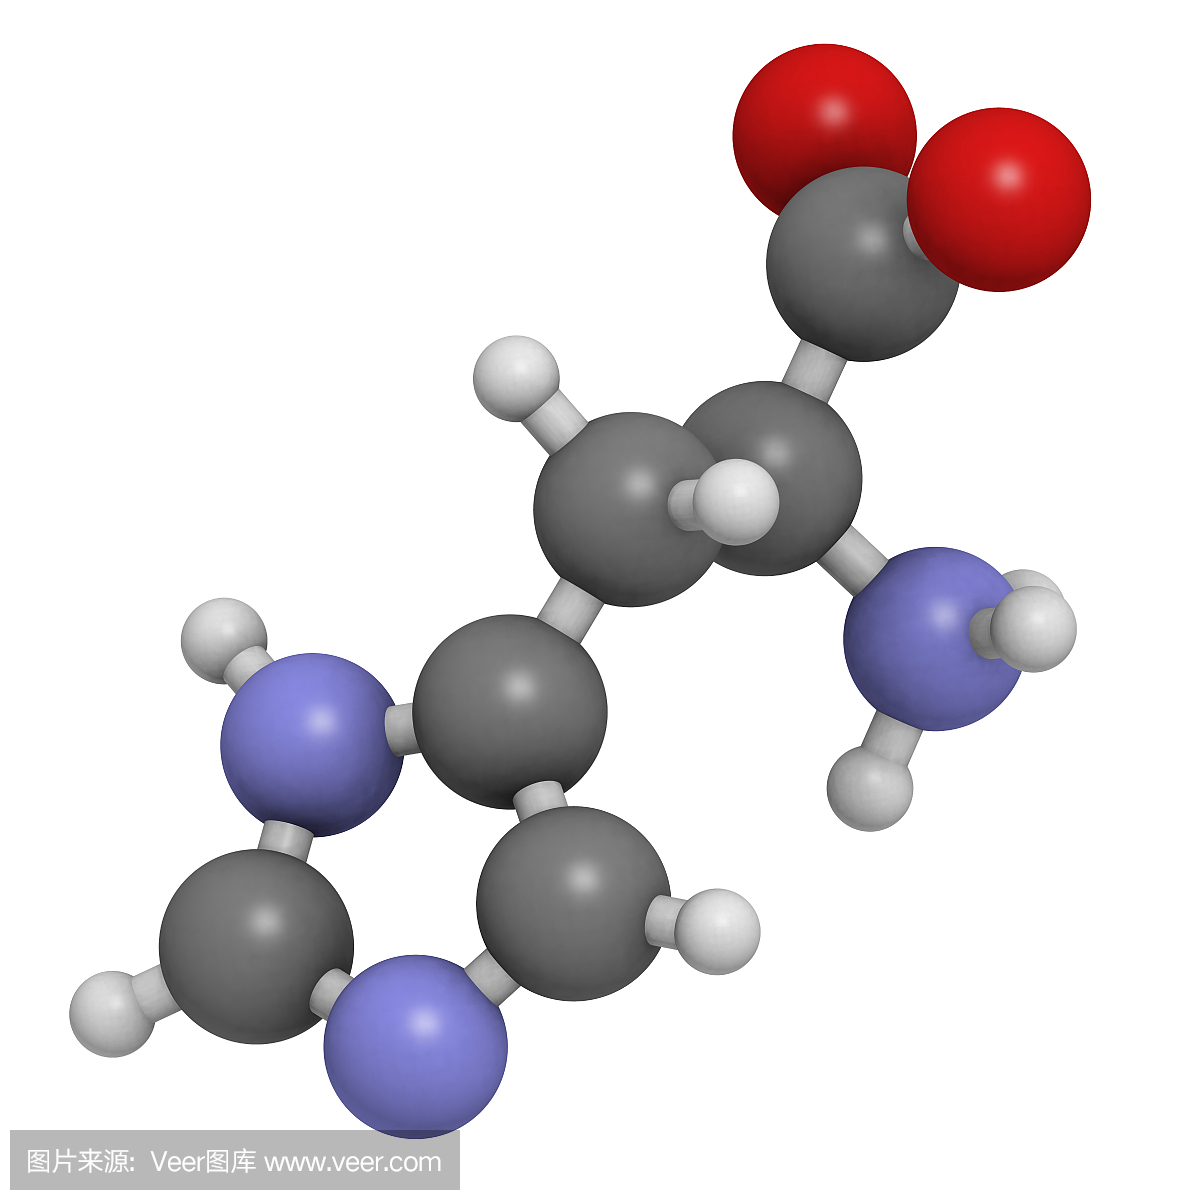 组氨酸(His,H)氨基酸,分子模型。